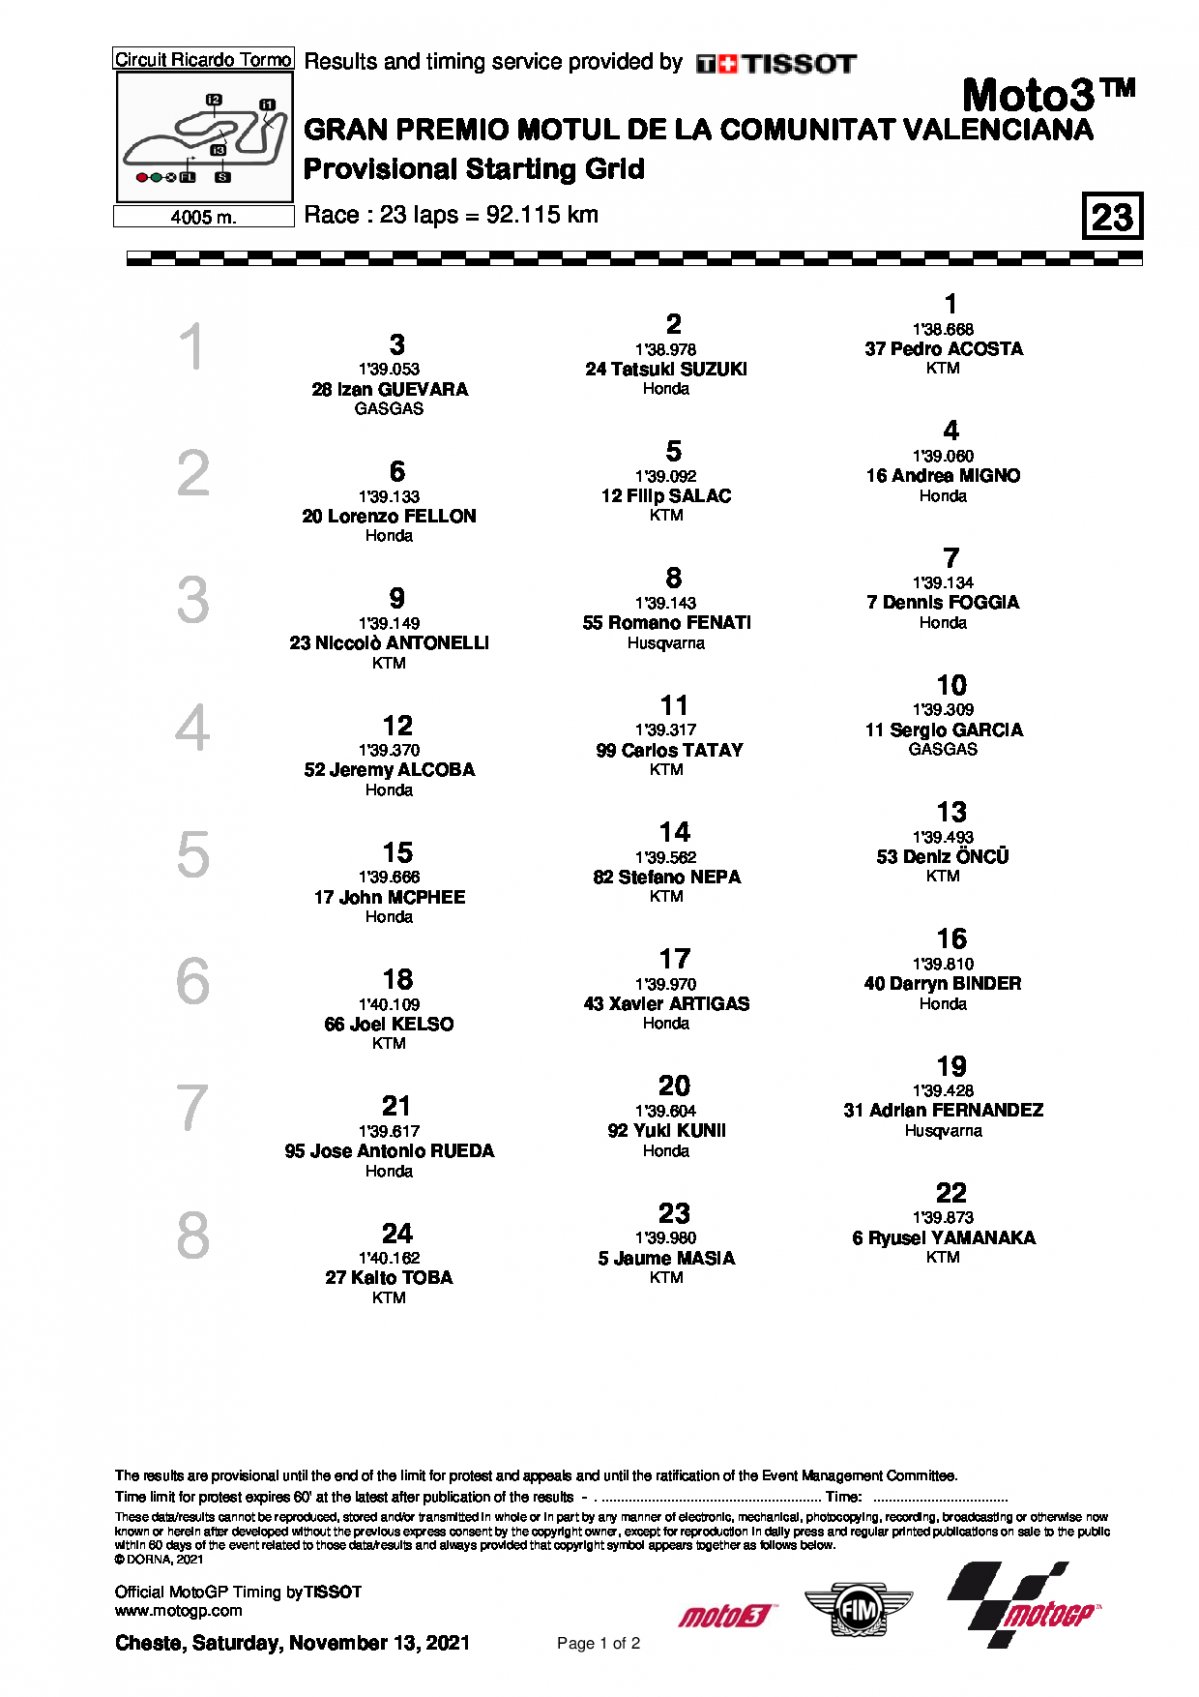 Стартовая решетка Гран-При Валенсии, Moto3 (14/11/2021)